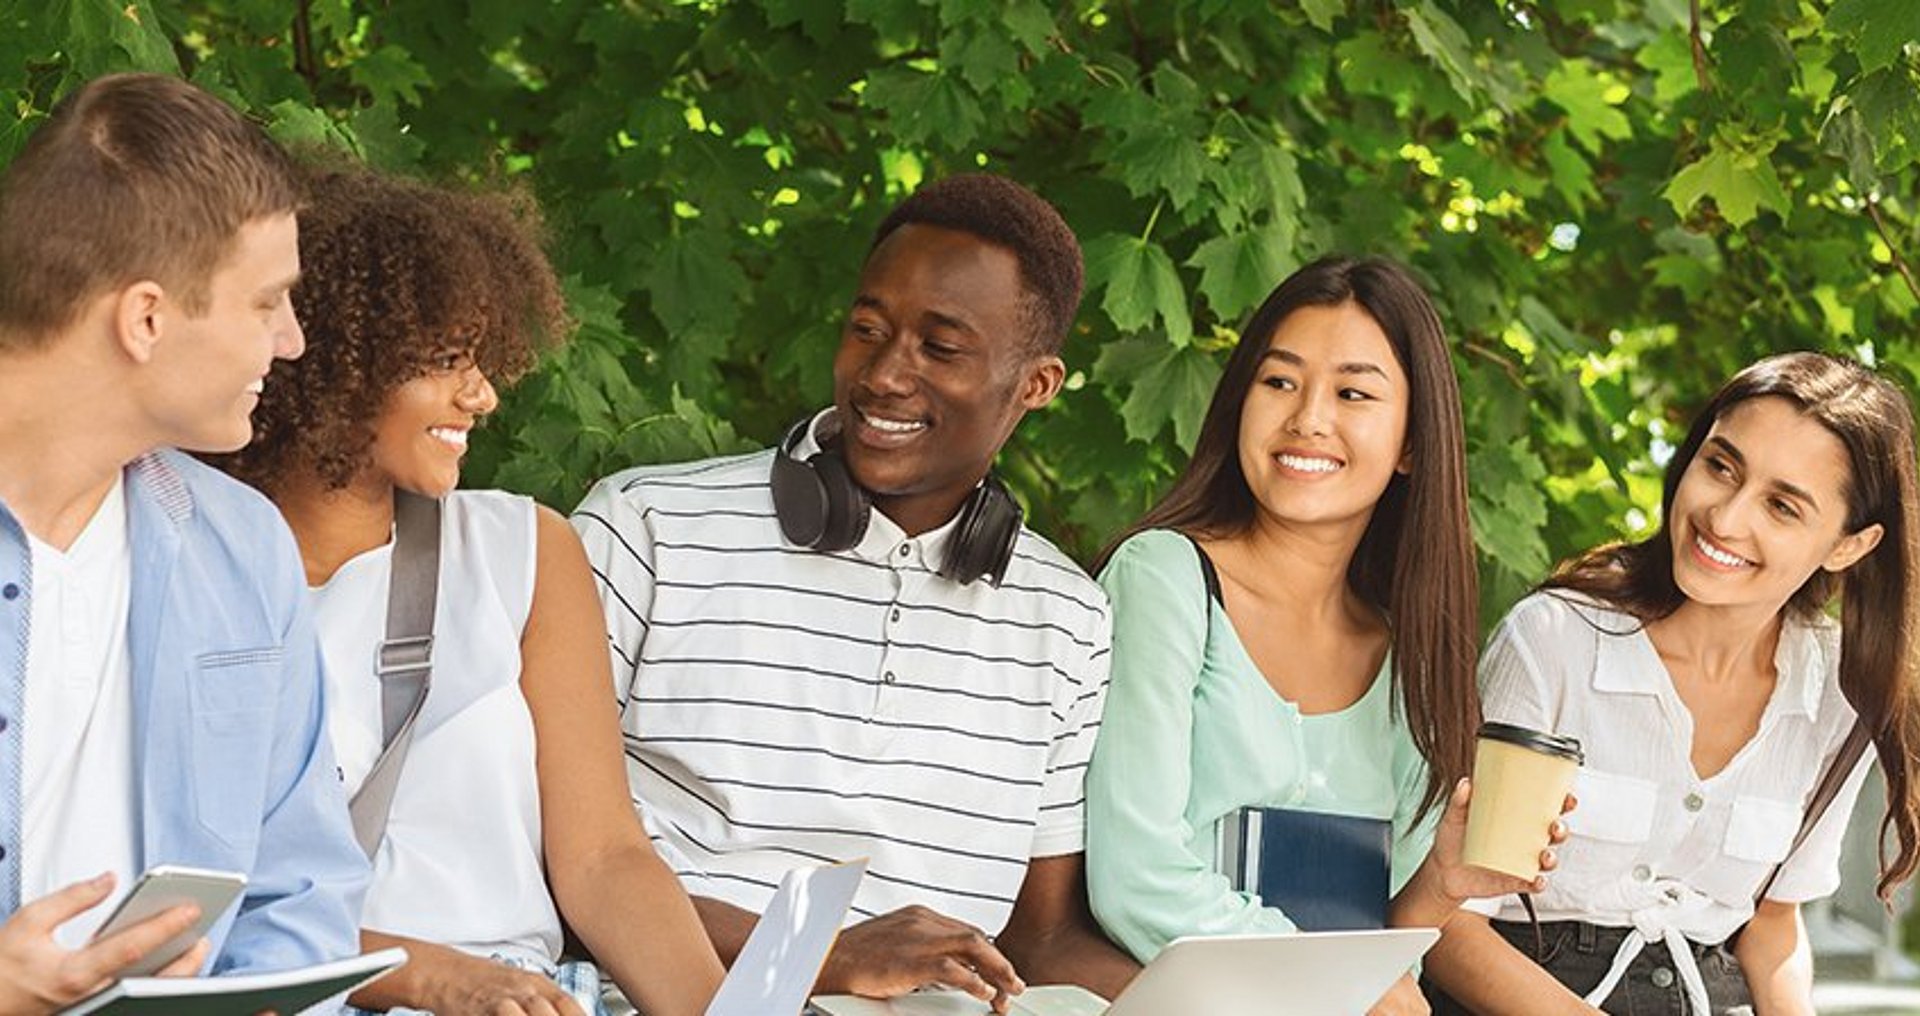 Fünf Studierende unterschiedlicher Herkunft sitzen mit ihren Studienunterlagen und Laptops gemeinsam im Freien vor dem Hintergrund grünen Blattwerks